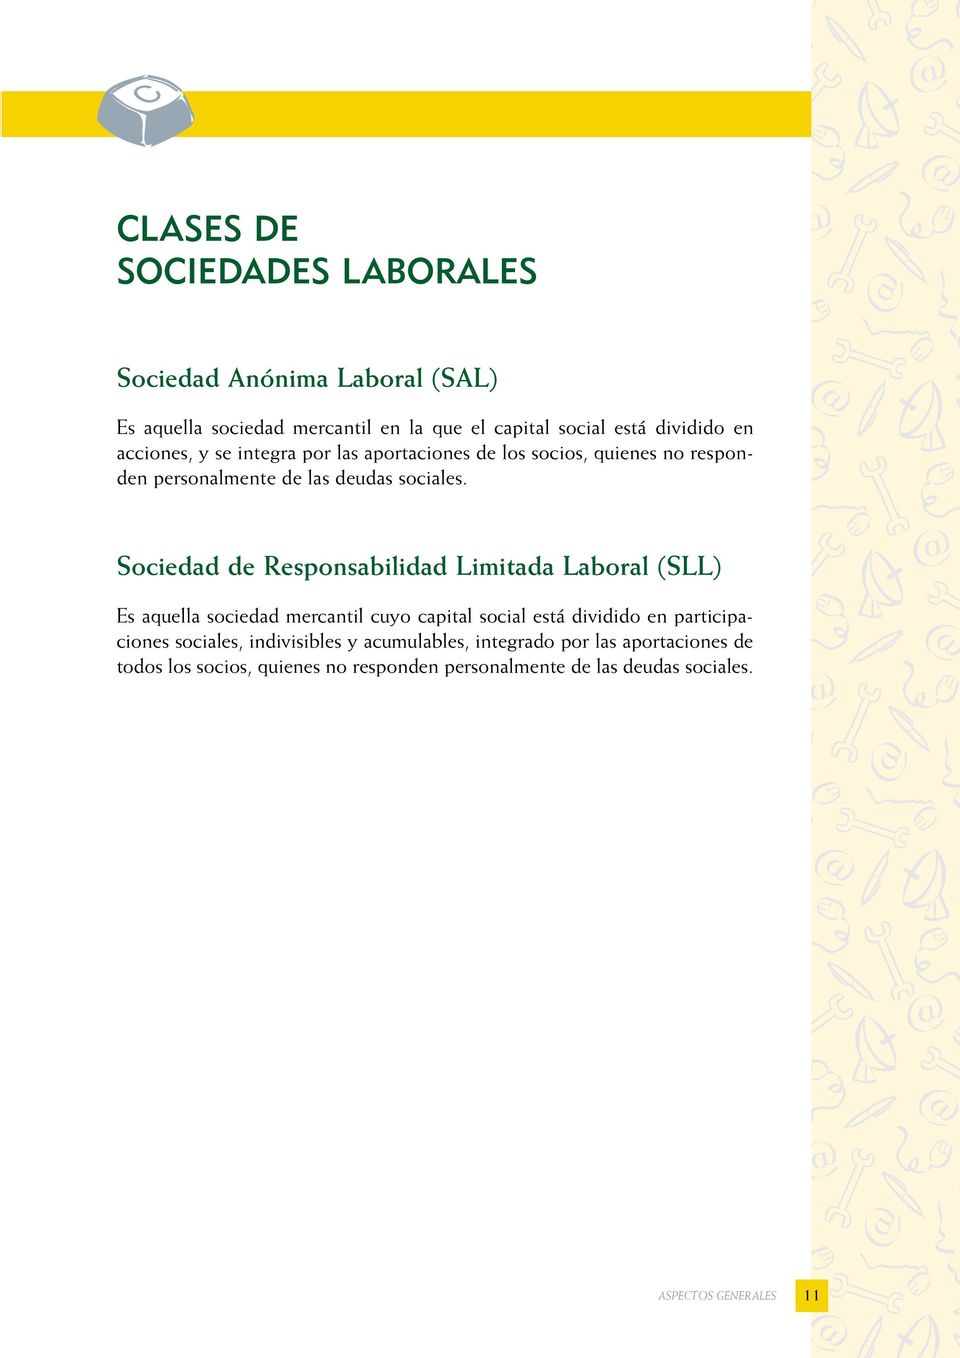 Sociedad de Responsabilidad Limitada Laboral (SLL) Es aquella sociedad mercantil cuyo capital social está dividido en participaciones